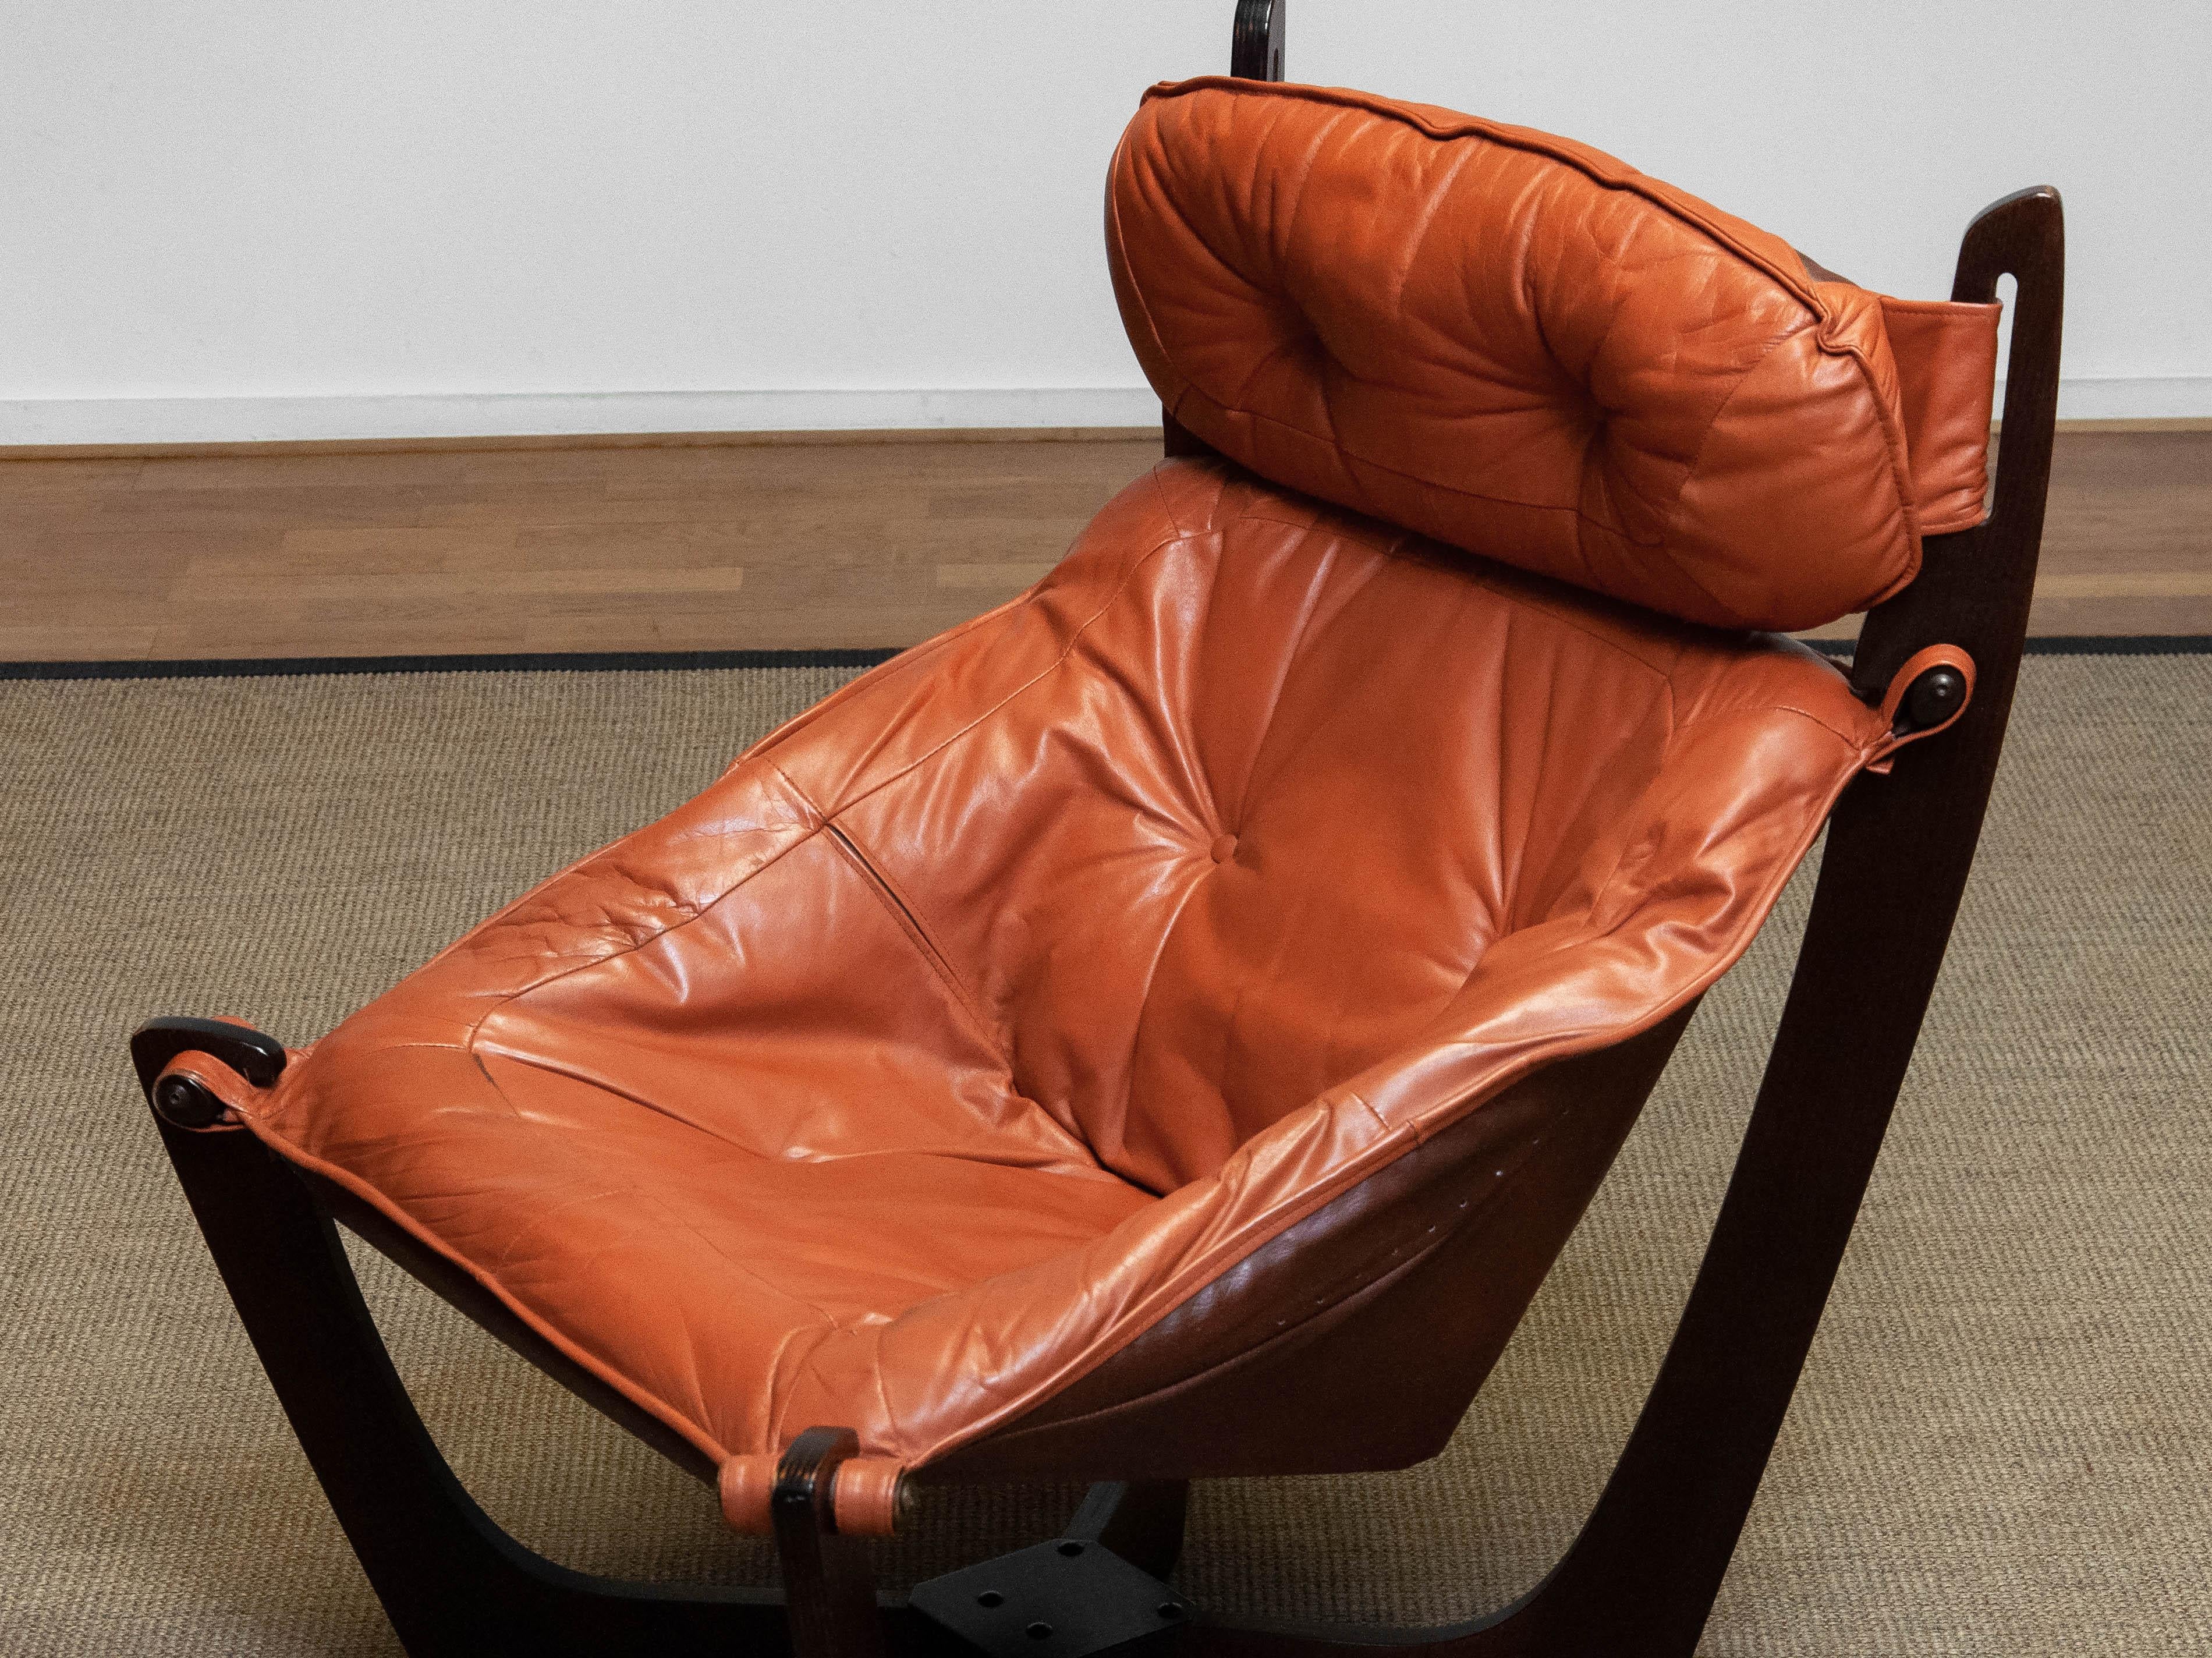 1970s Cognac Leather Lounge Chair 'Luna' by Odd Knutsen for Hjellegjerde Møbler 2